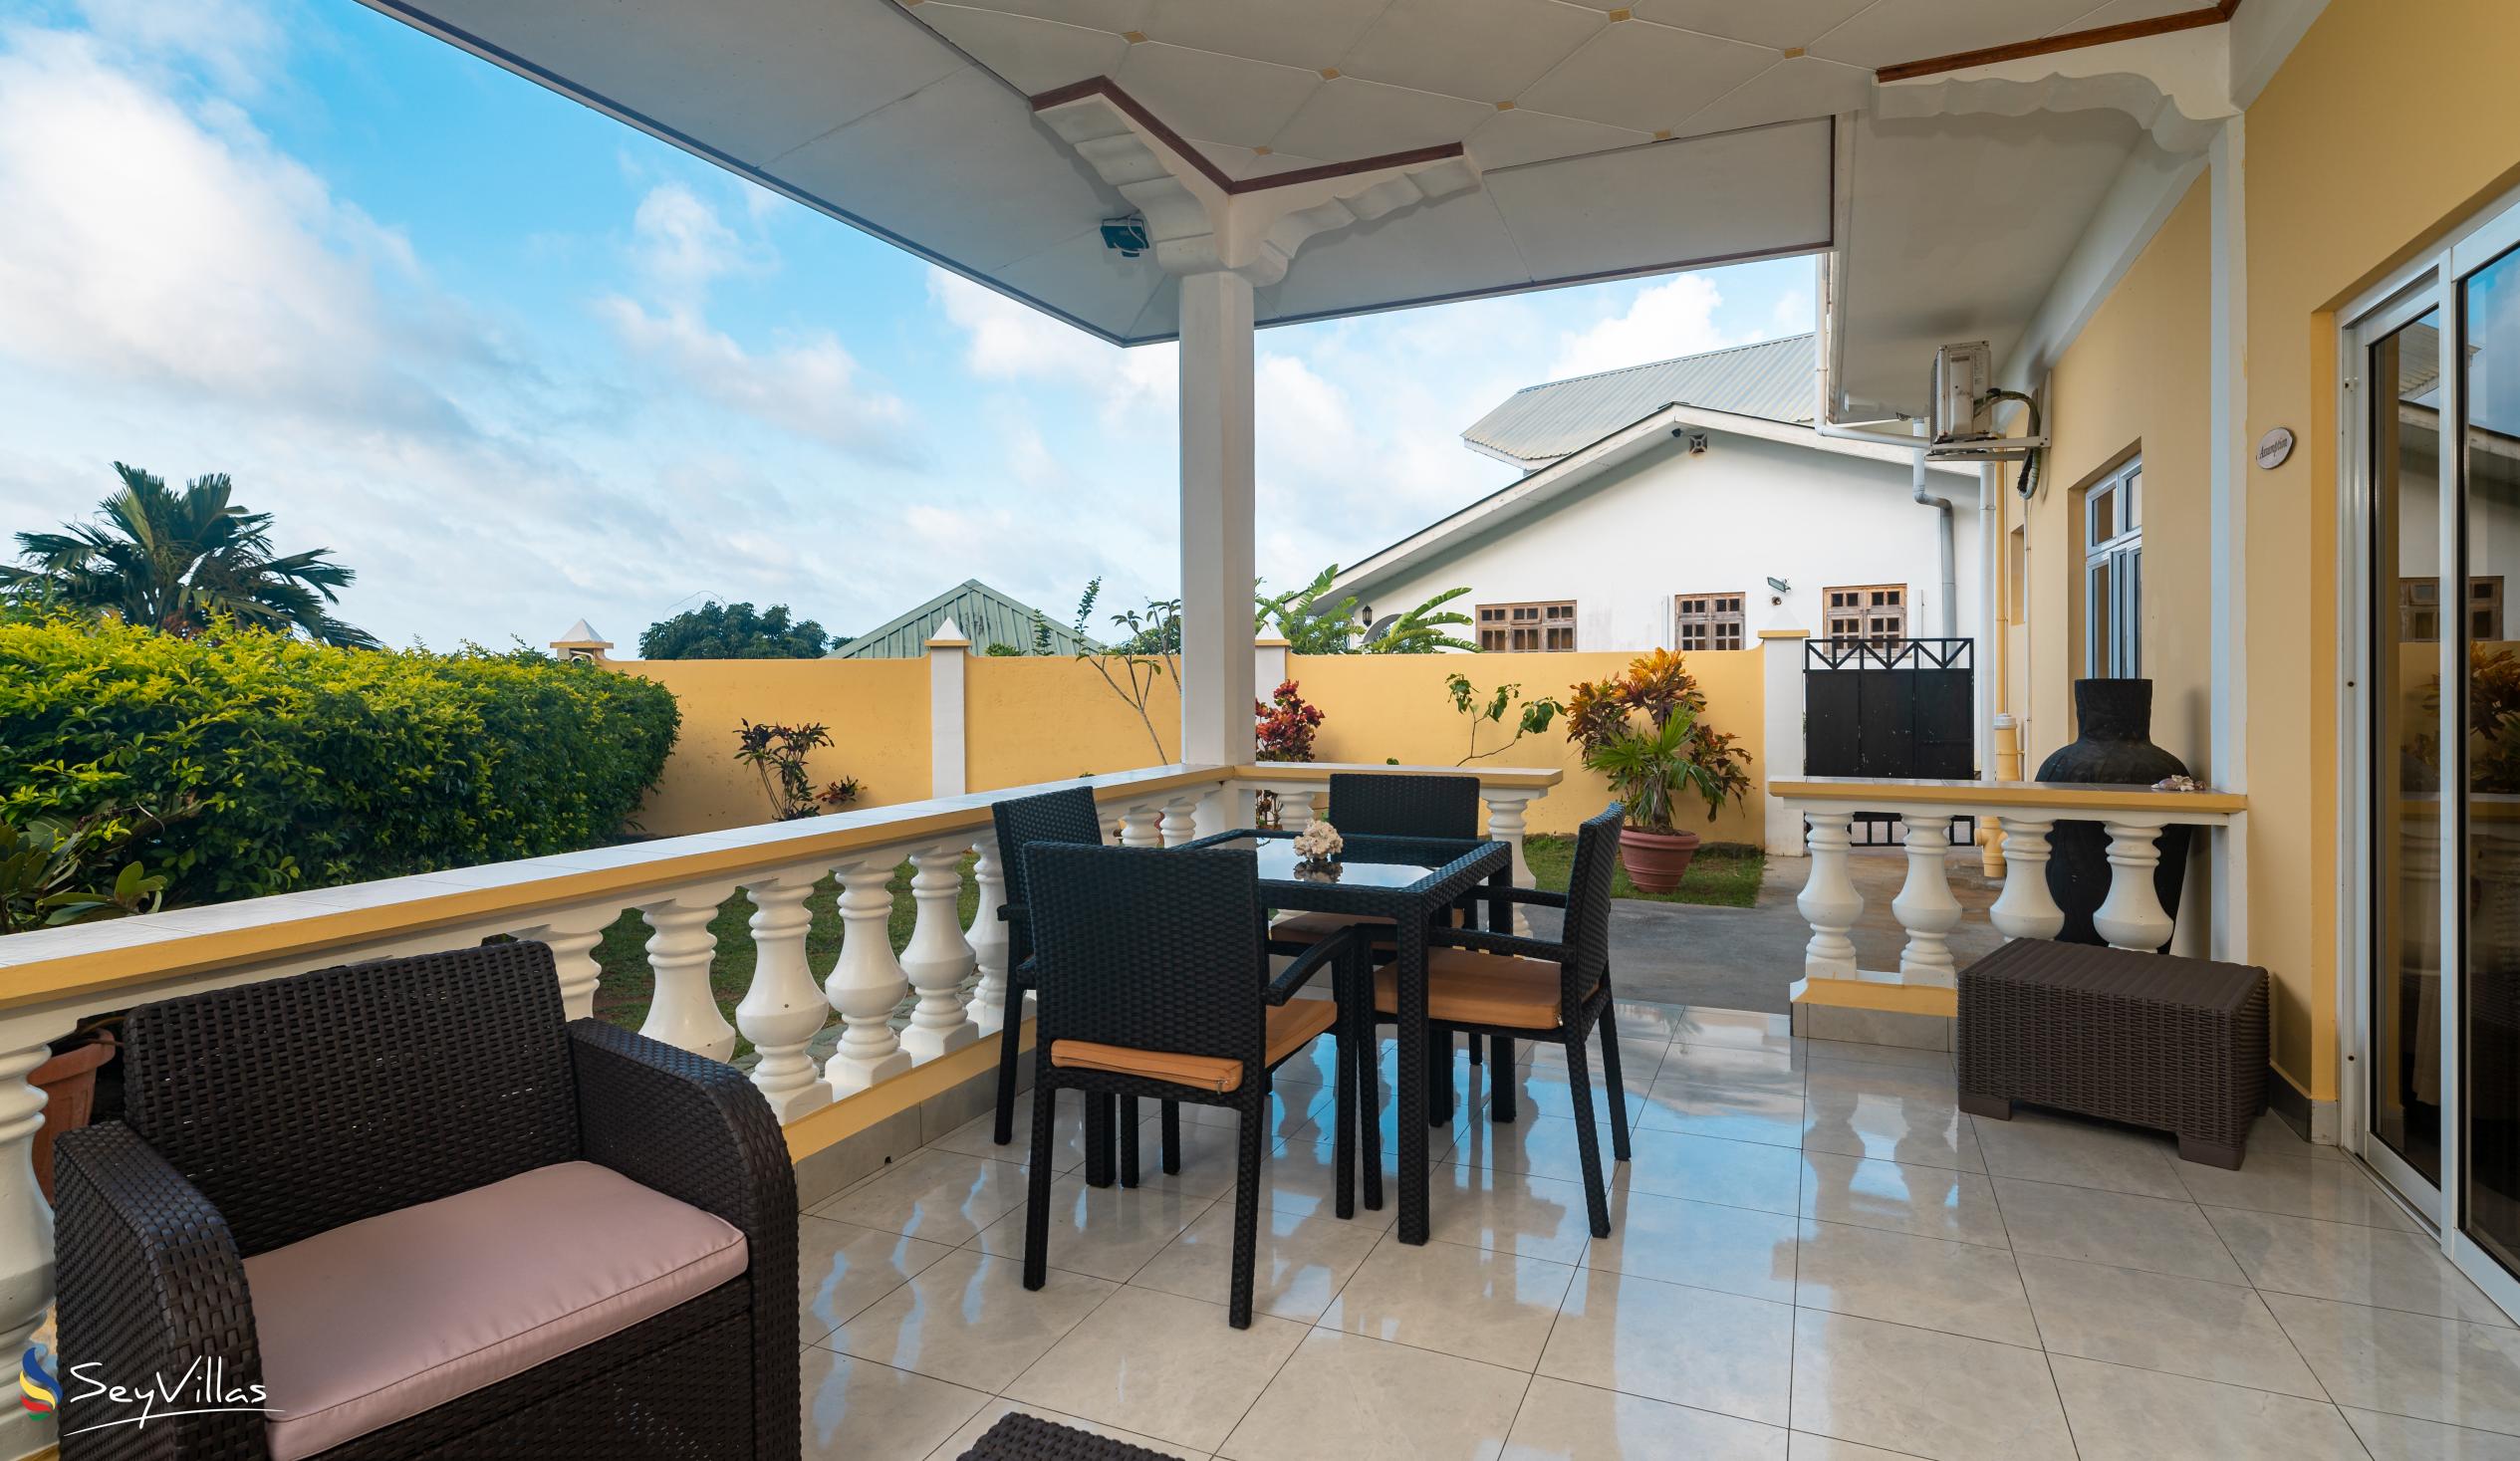 Foto 27: East Horizon - Appartement vue sur le jardin - 2 chambres - Mahé (Seychelles)